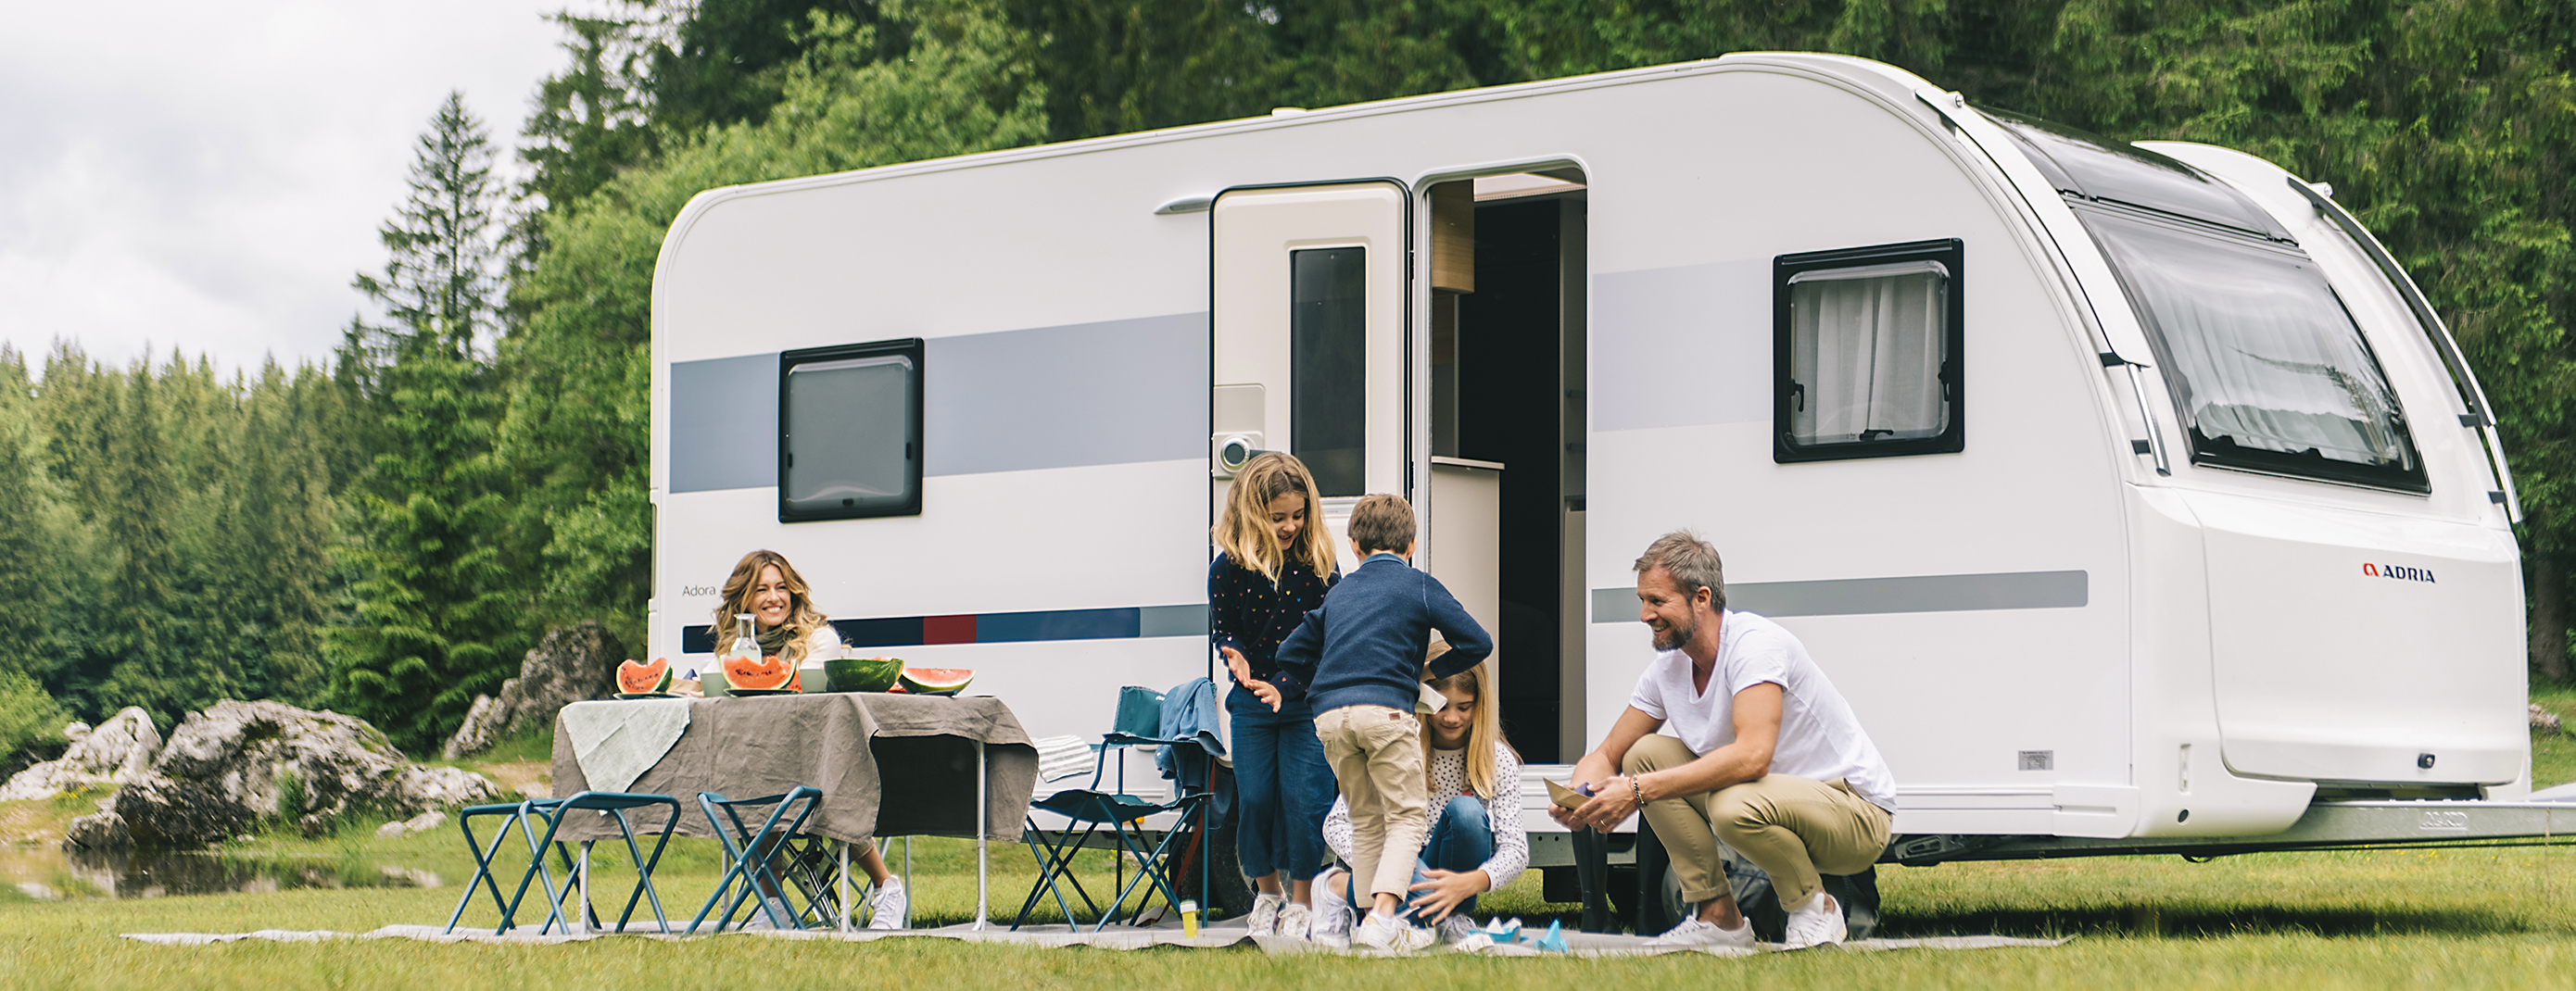 Wohnwagen für Familien  Camping Urlaub mit Kindern